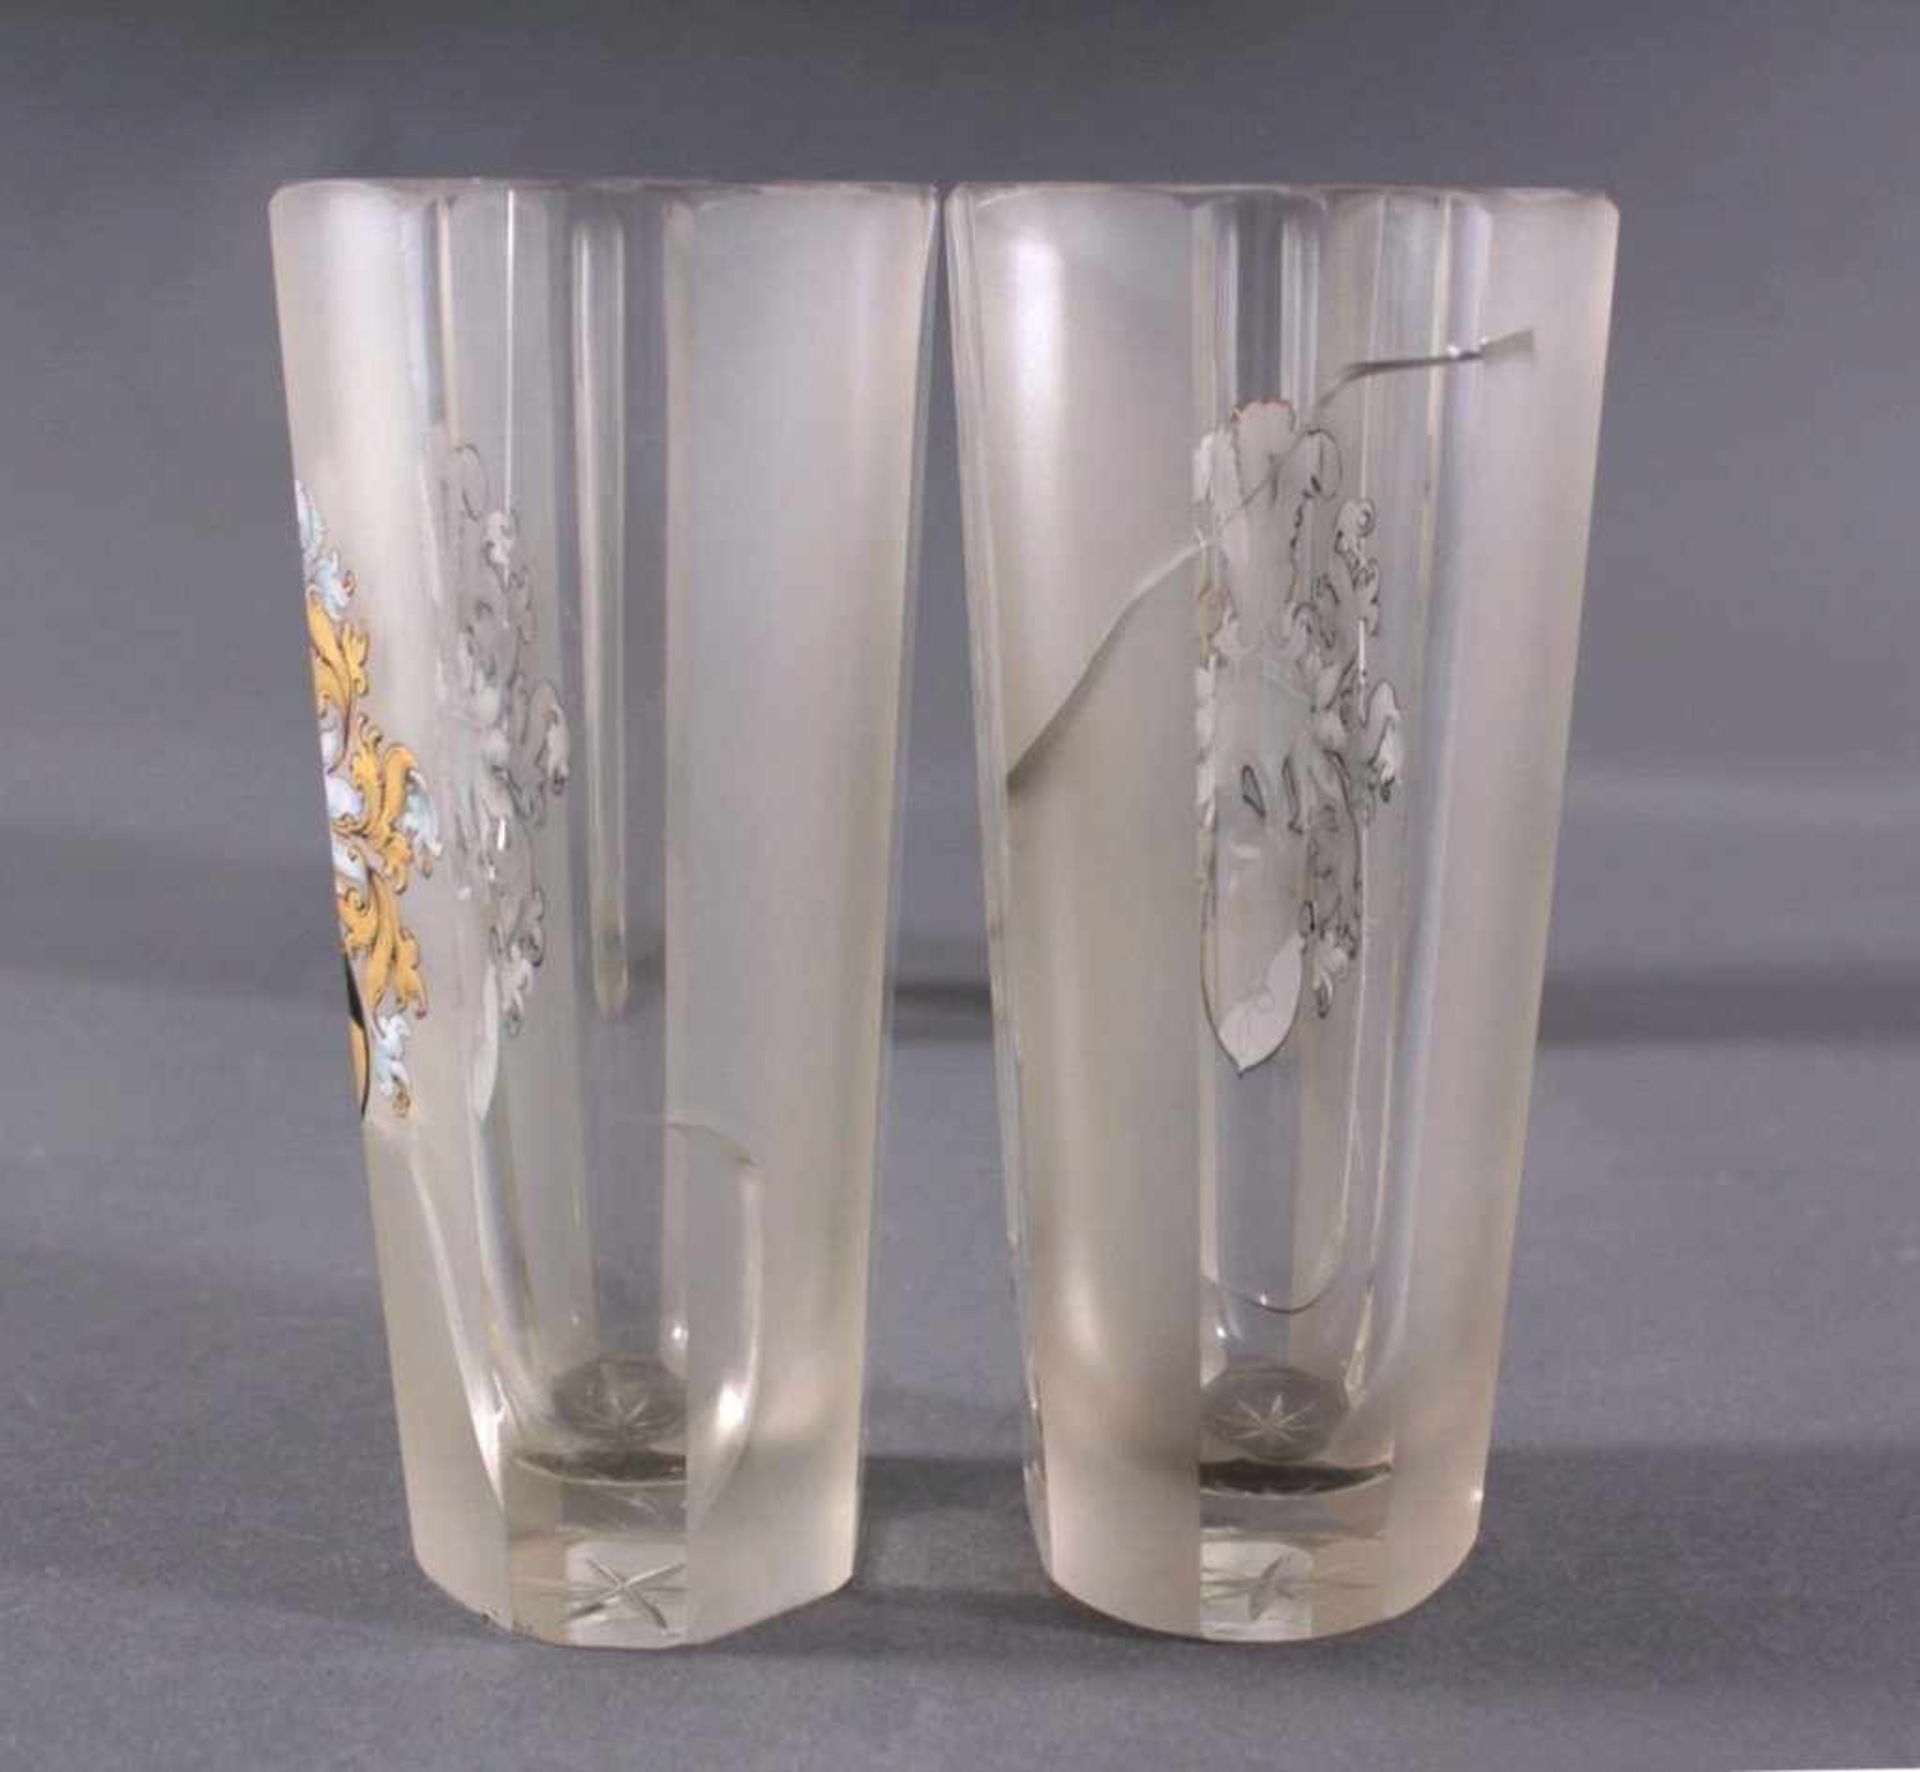 4 Gläser mit Verbindungswappen Laetitia-KarlsruheFarbloses Glas Facettenschliff abwechselnd - Bild 5 aus 6